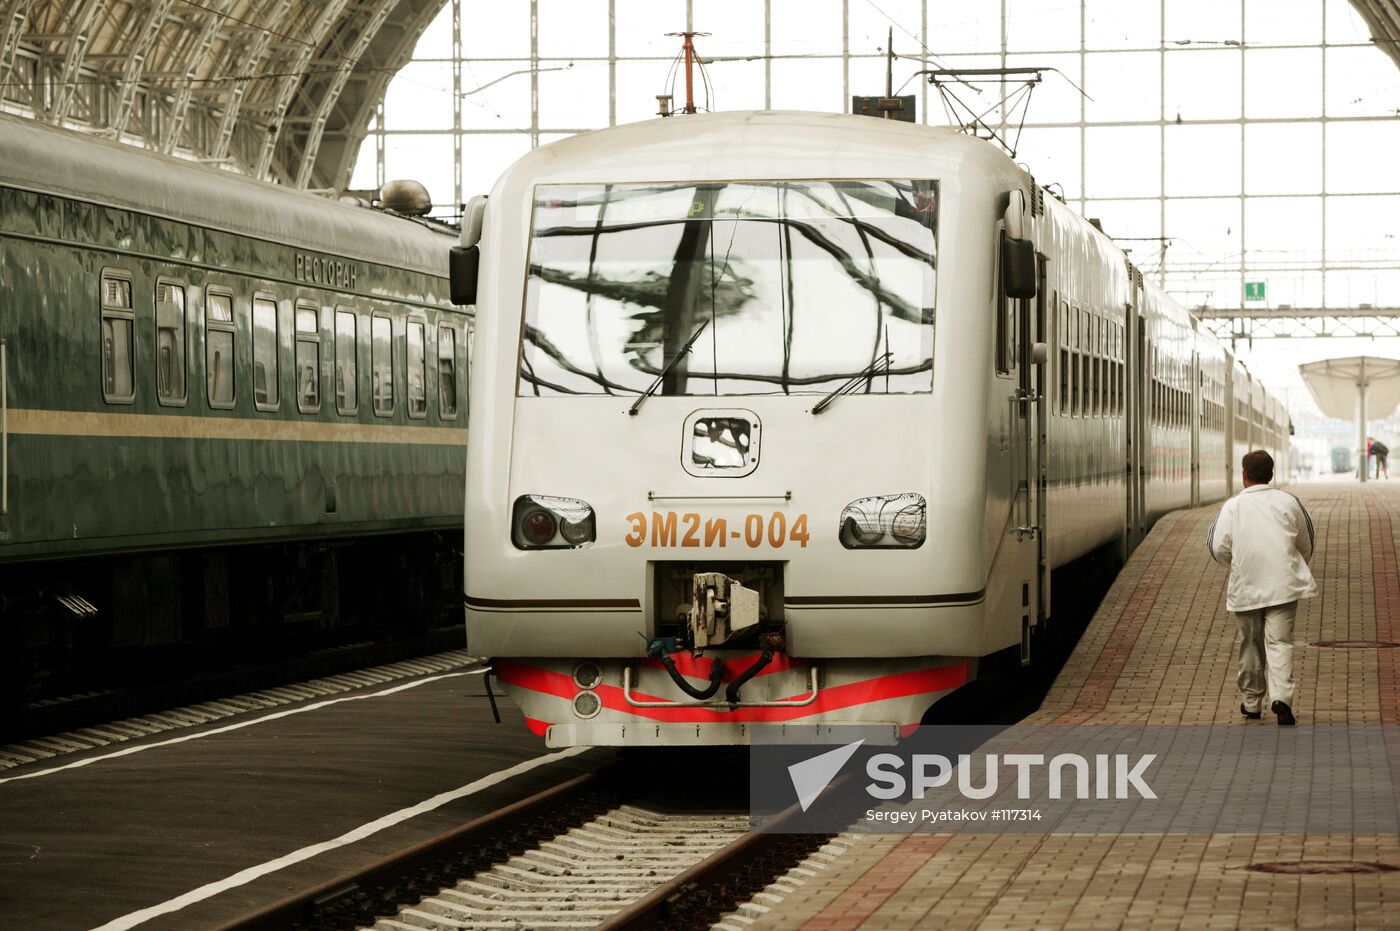 HIGH-SPEED ELECTRIC TRAIN  KIEVSKY RAILWAY TERMINAL 